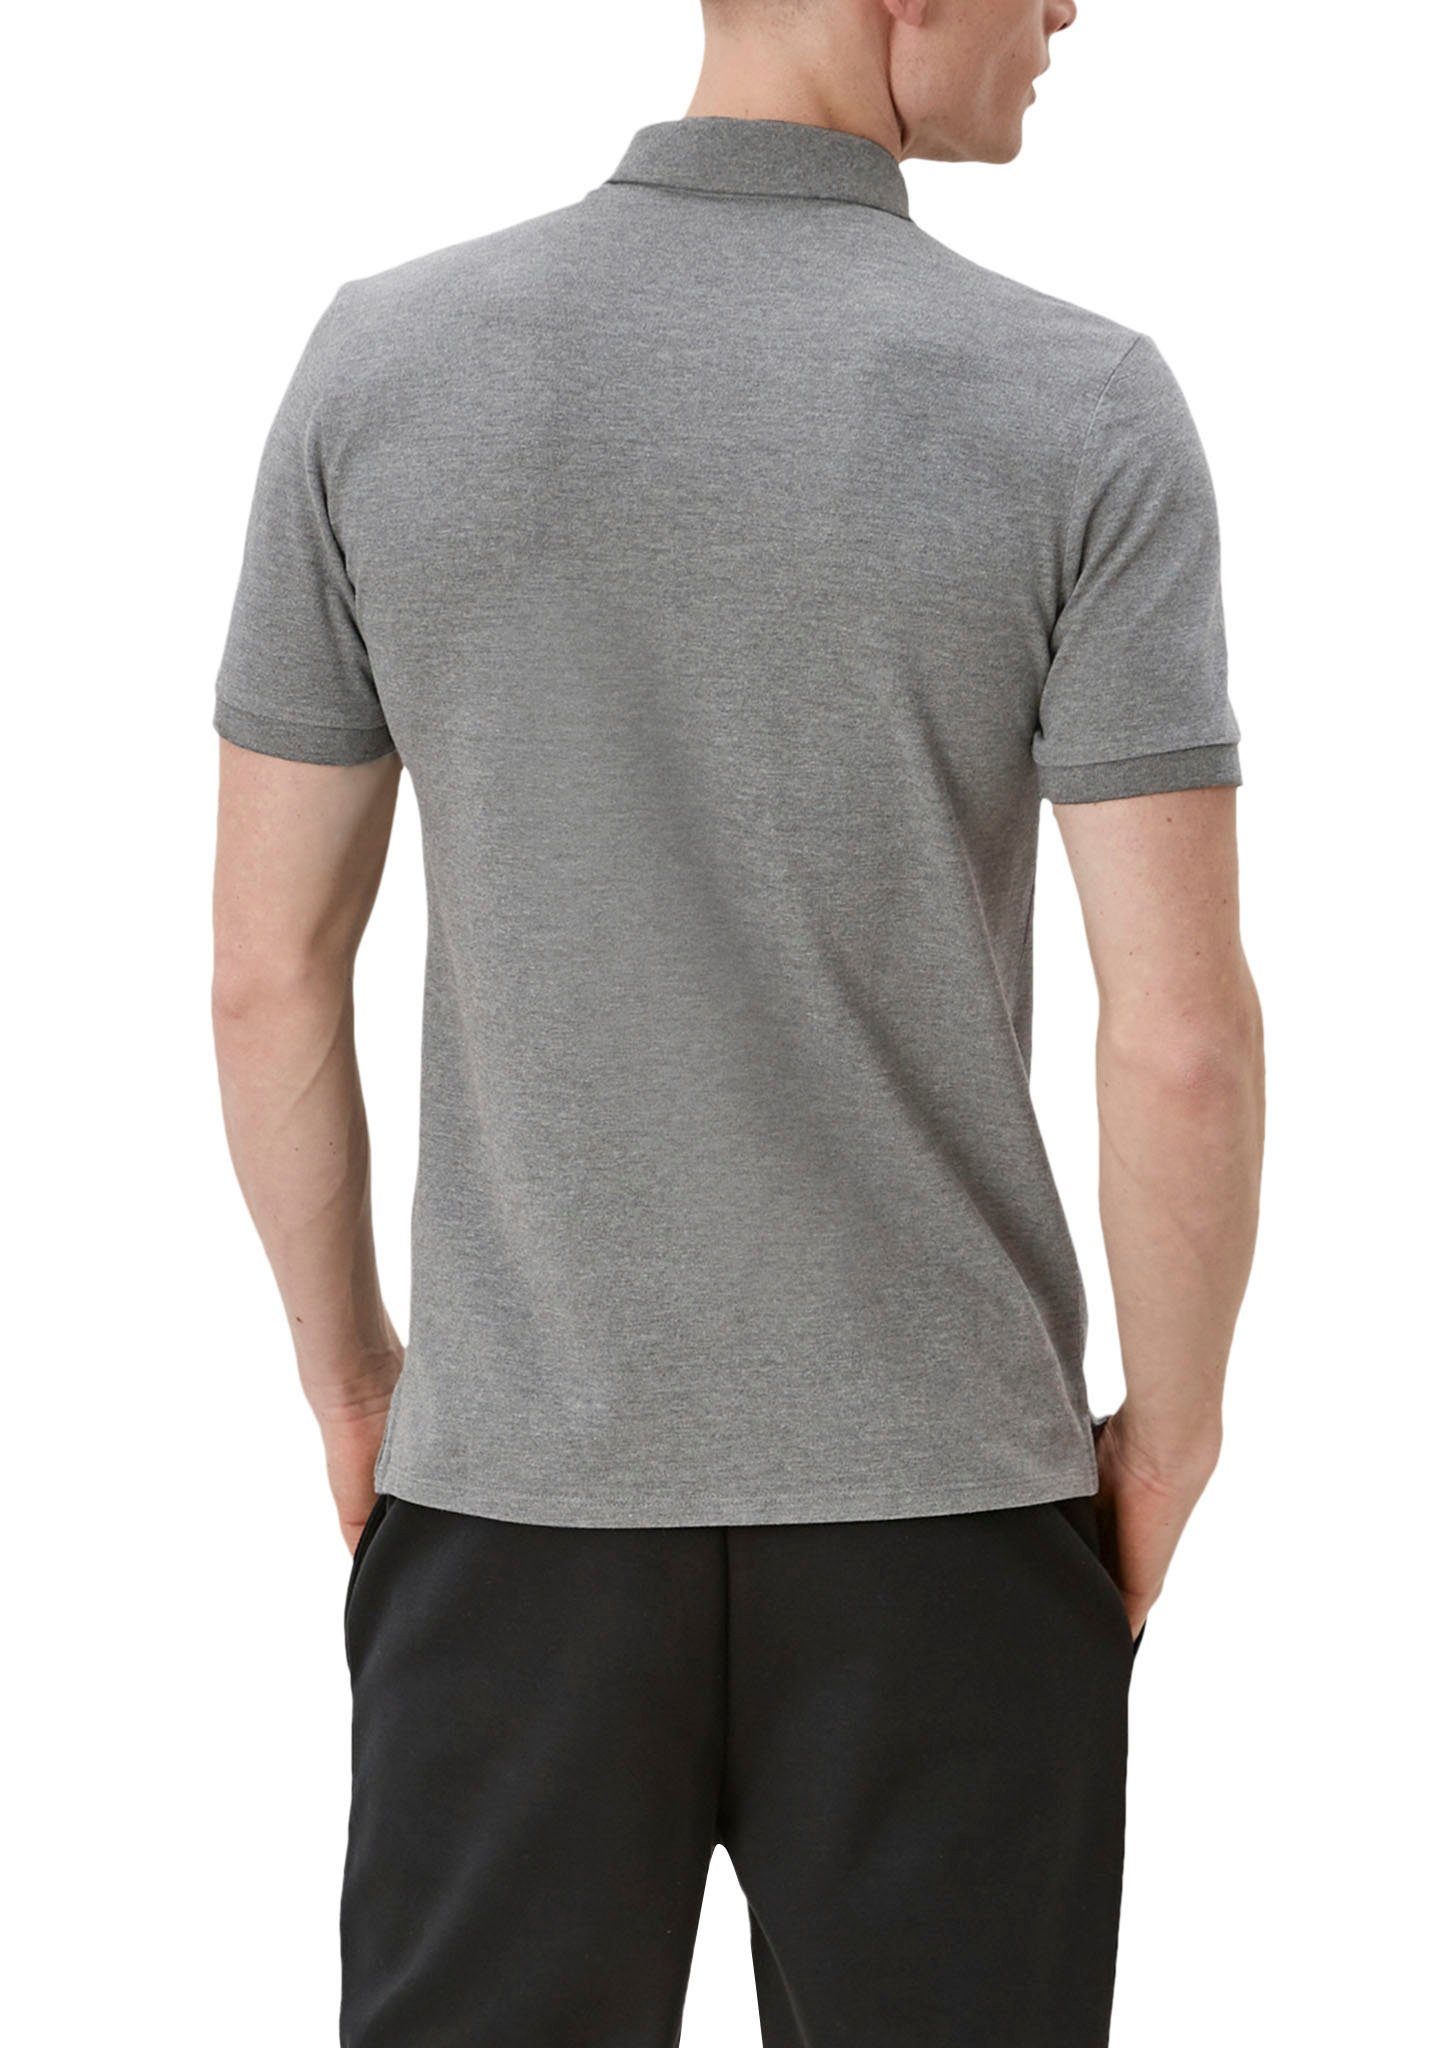 den QS Einschnitte an Poloshirt Seiten grey/black